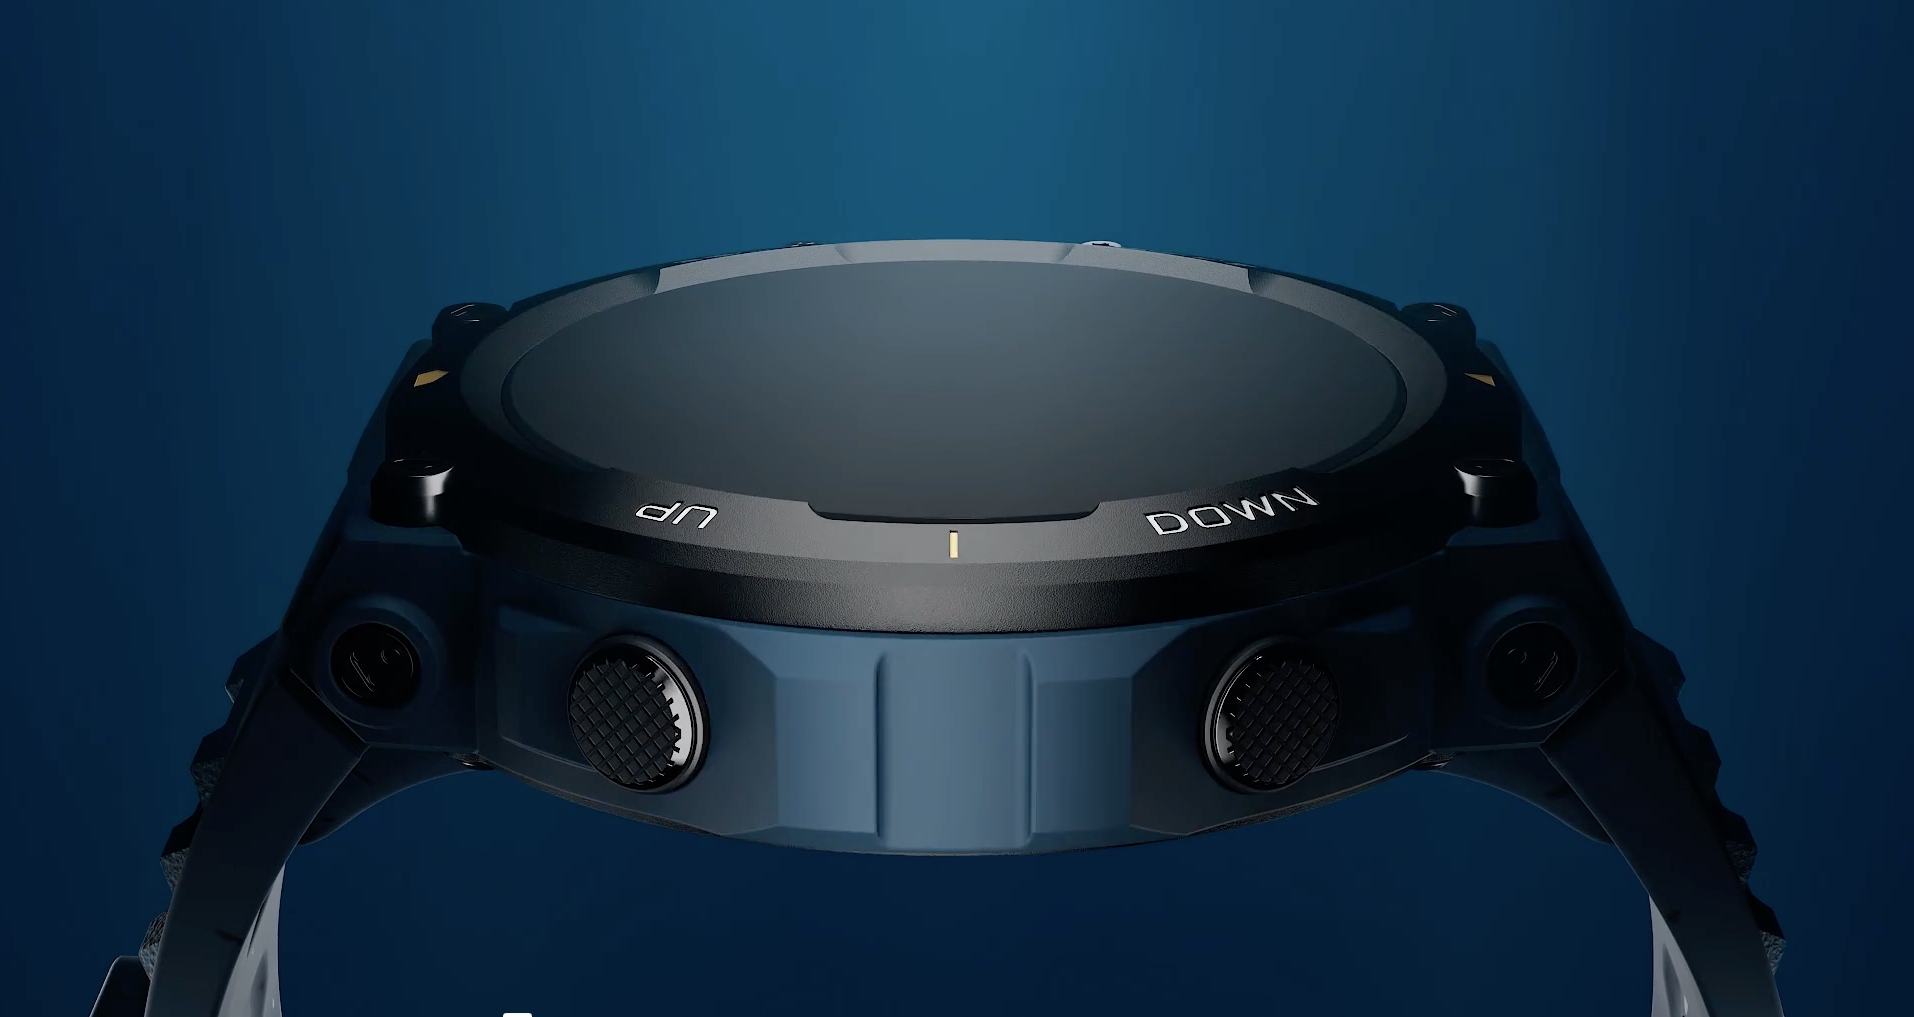 Huami presenta una versión especial del smartwatch Amazfit T-Rex 2 Ocean Blue para celebrar el Día Mundial de los Océanos